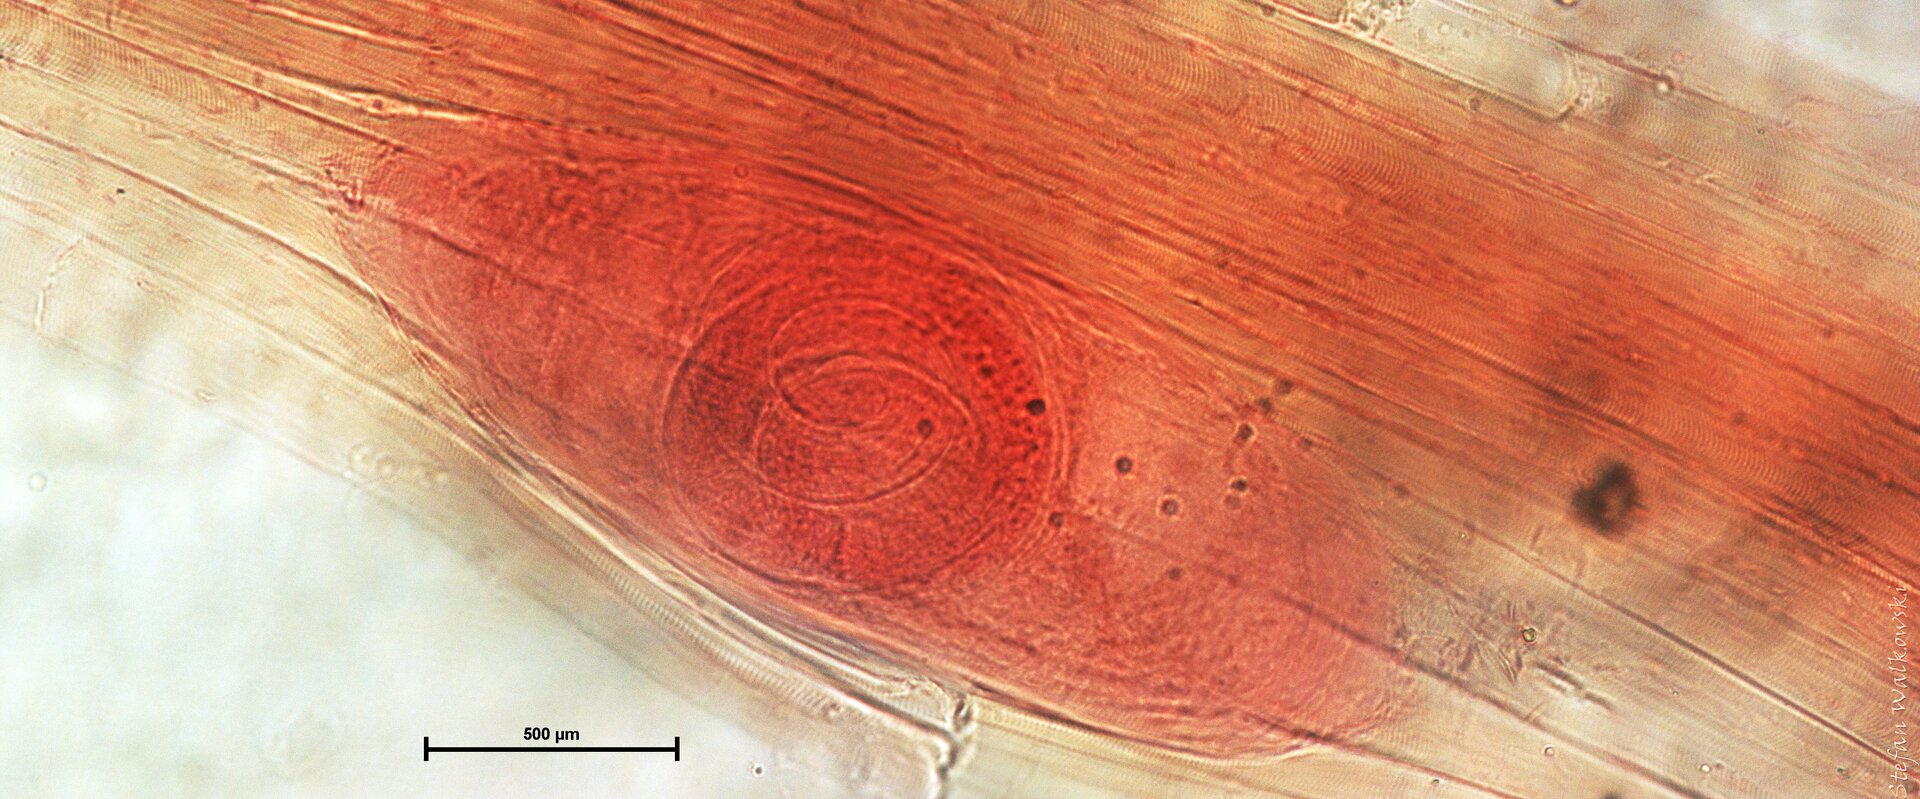 Fotografia mikroskopowa przedstawia podłużną cystę włośnia krętego w mięśniu świni. Cysta jest ułożona ukośnie, wzdłuż włókiem mięśnia. Jej wielkość można ocenić za pomocą podziałki na dole fotografii: 500 mikrometrów, czyli pół milimetra.